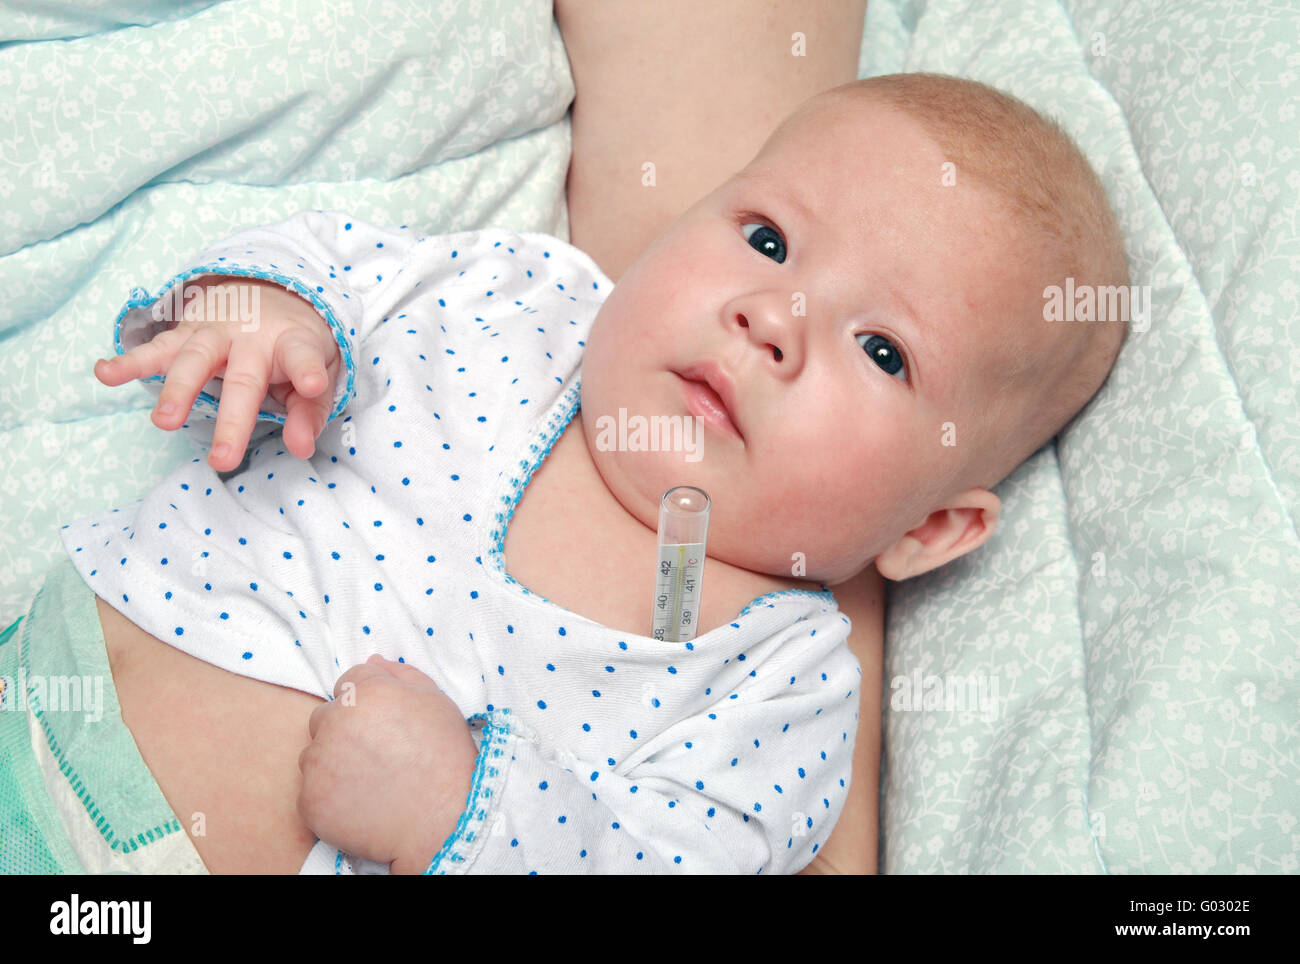 La mesure de la température du corps de l'enfant malade de 4 mois Banque D'Images